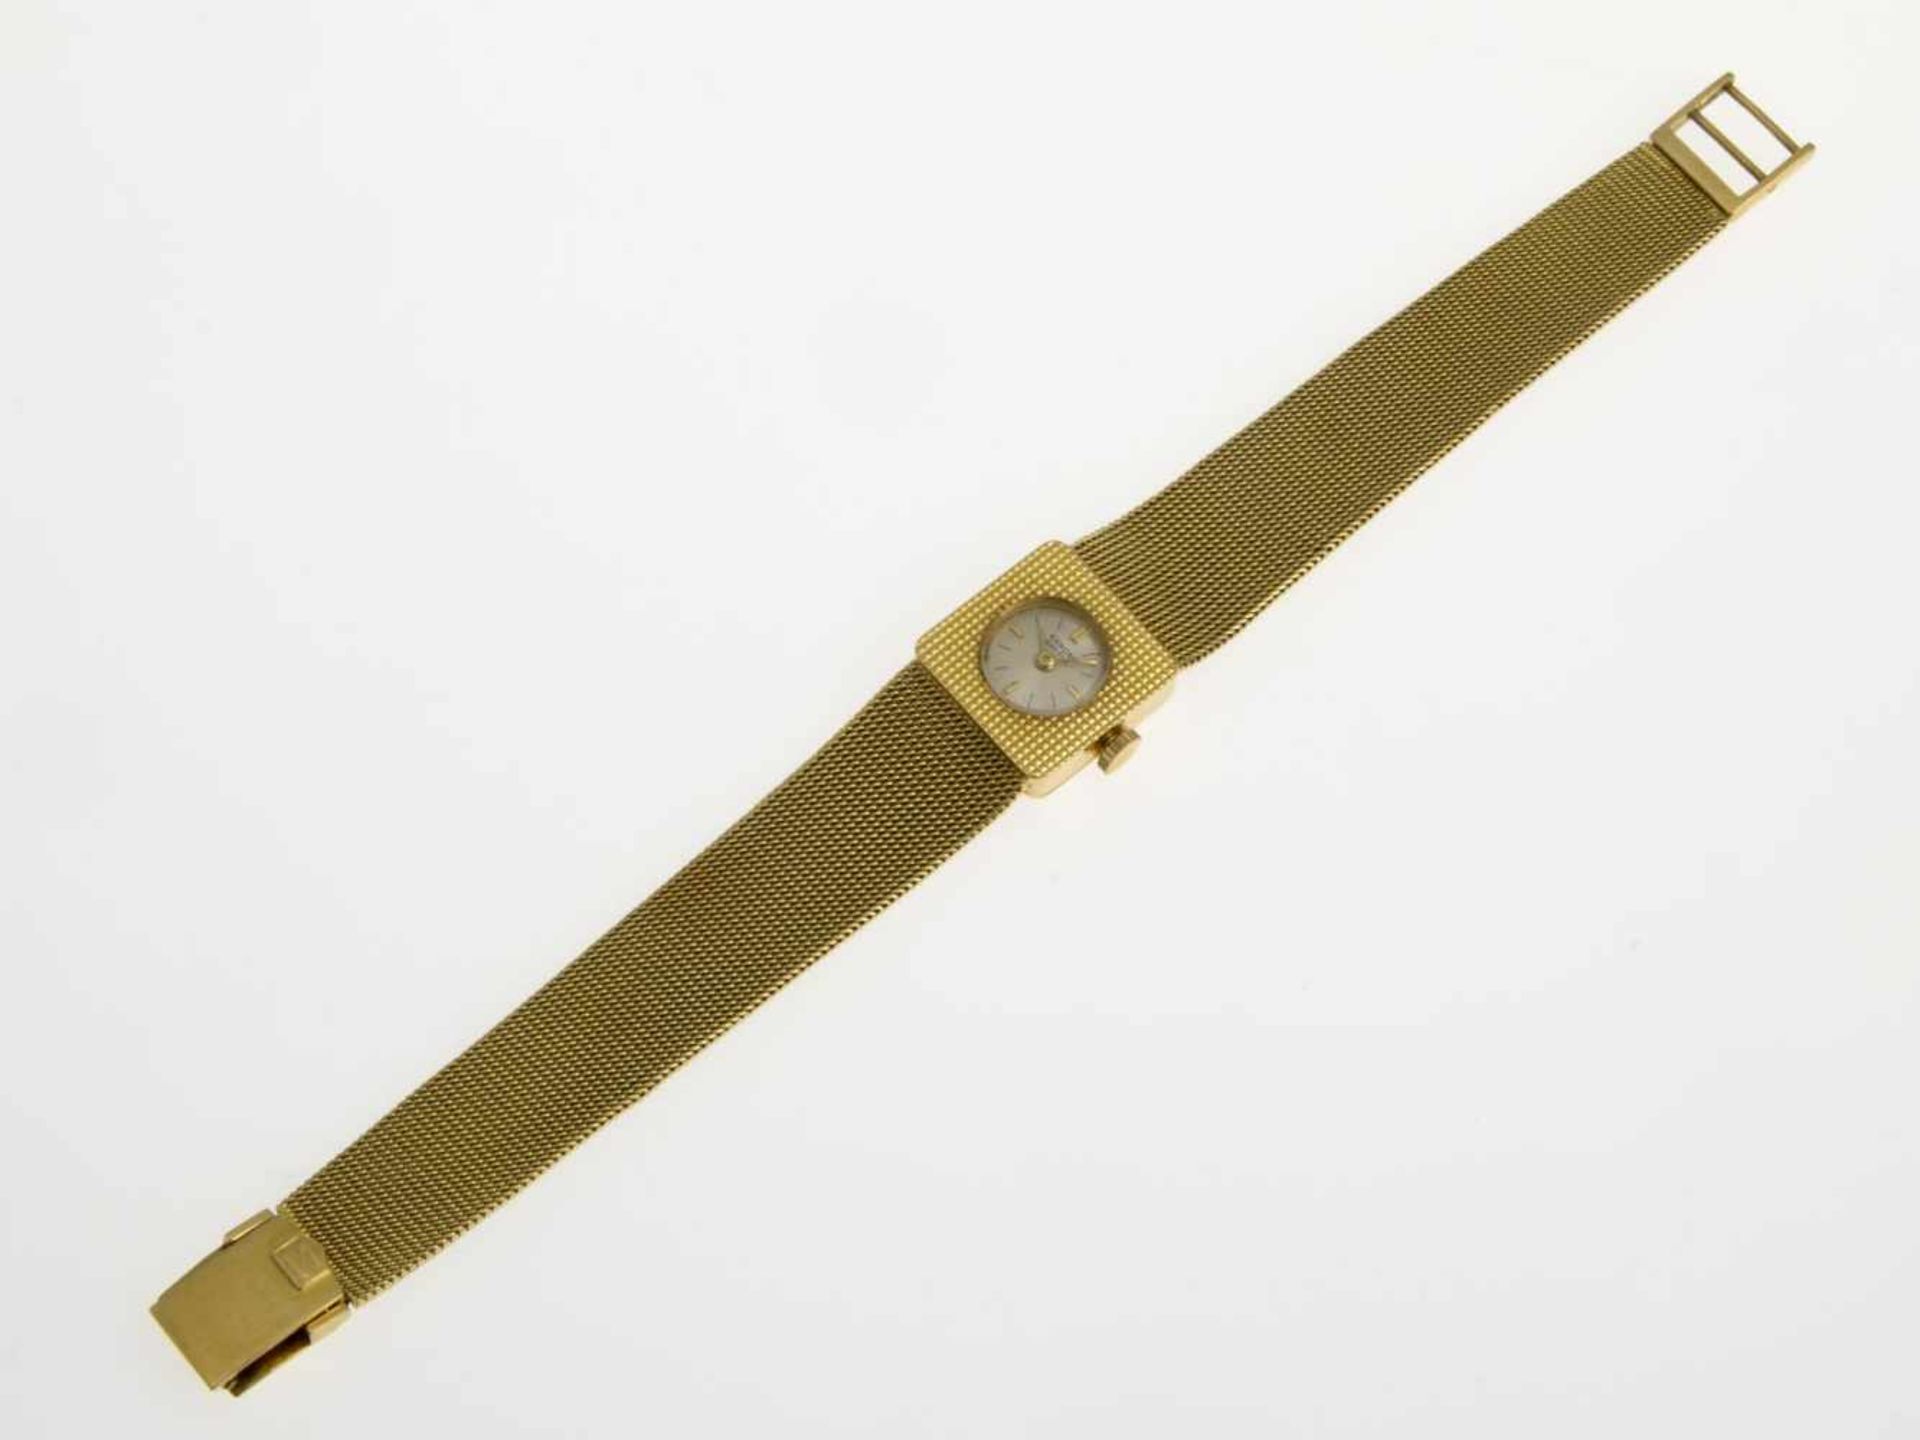 Sarcar-DamenarmbanduhrGehäuse und Armband aus Gelbgold 750. Versilbertes Zifferblatt mit - Bild 2 aus 3